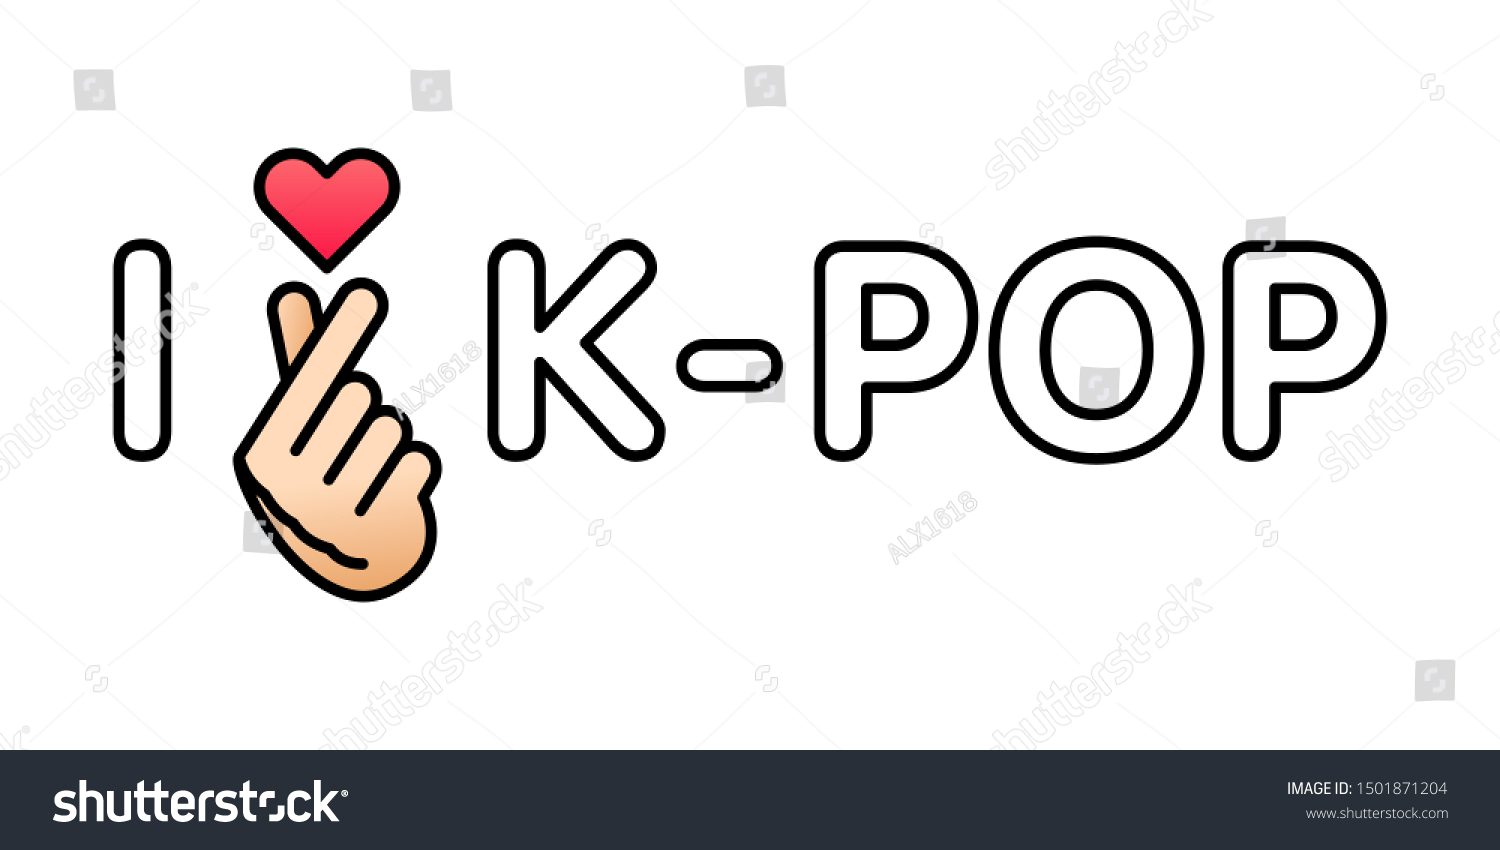 韓国のポスター 黒い輪郭文字 K Popの音楽レコードのコンセプト Ui Uxデザインエレメント ベクターイラスト のベクター画像素材 ロイヤリティフリー